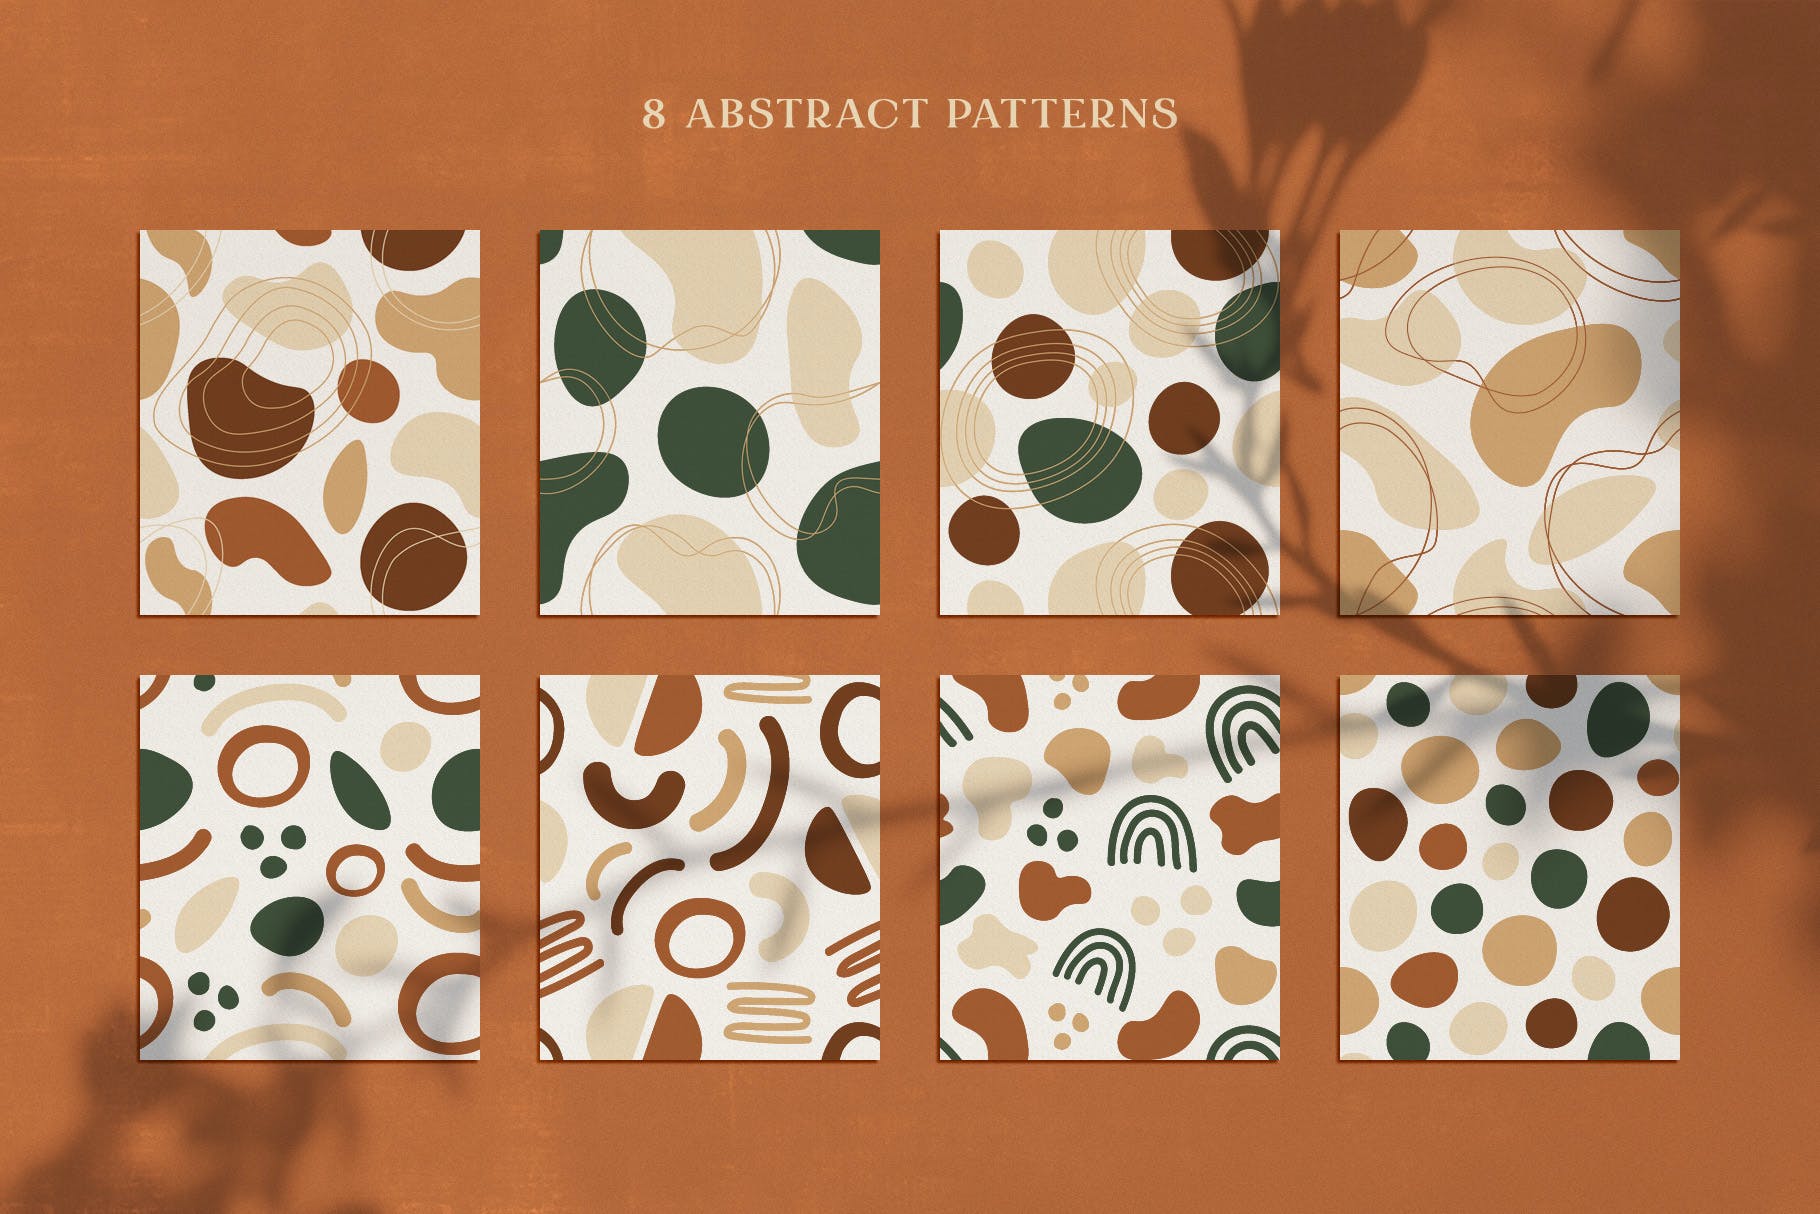 复杂不规则抽象图案素材 Lando Abstract Patterns 图片素材 第3张